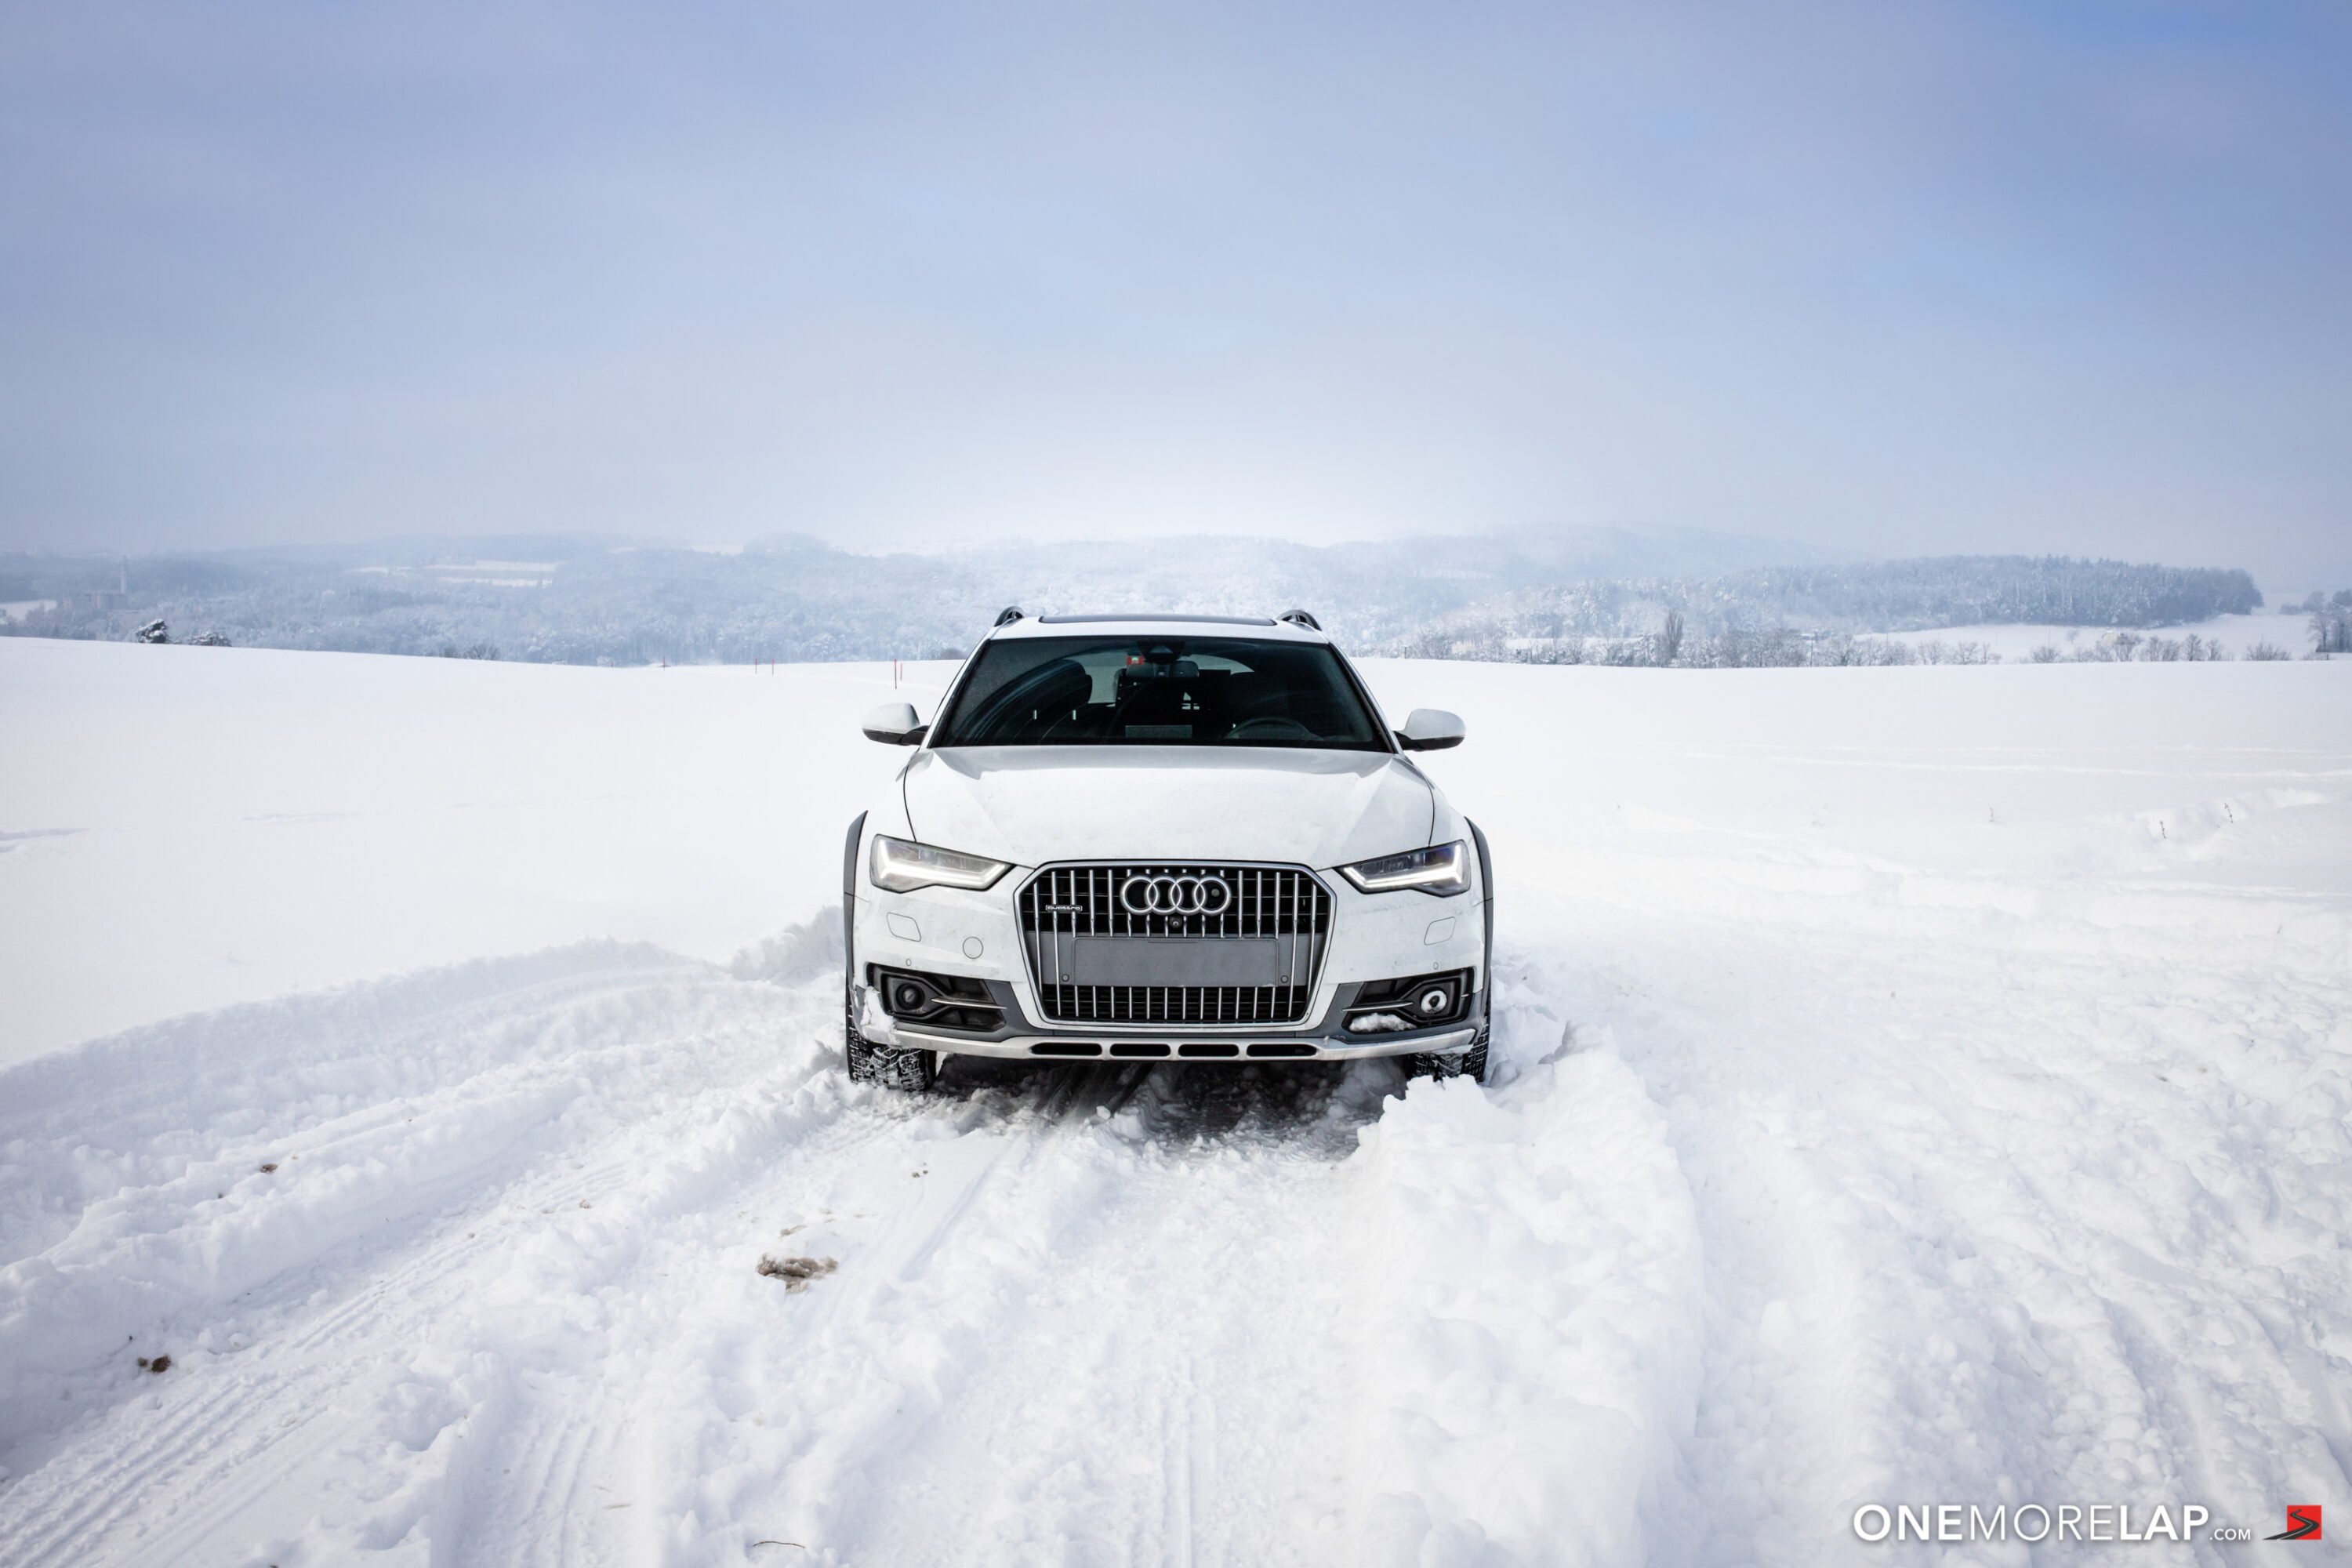 Audi A6 Allroad 3.0 BiTDI Quattro (4G C7 Facelift 2015) in Gletscherweiss / Glacierwhite im Schnee